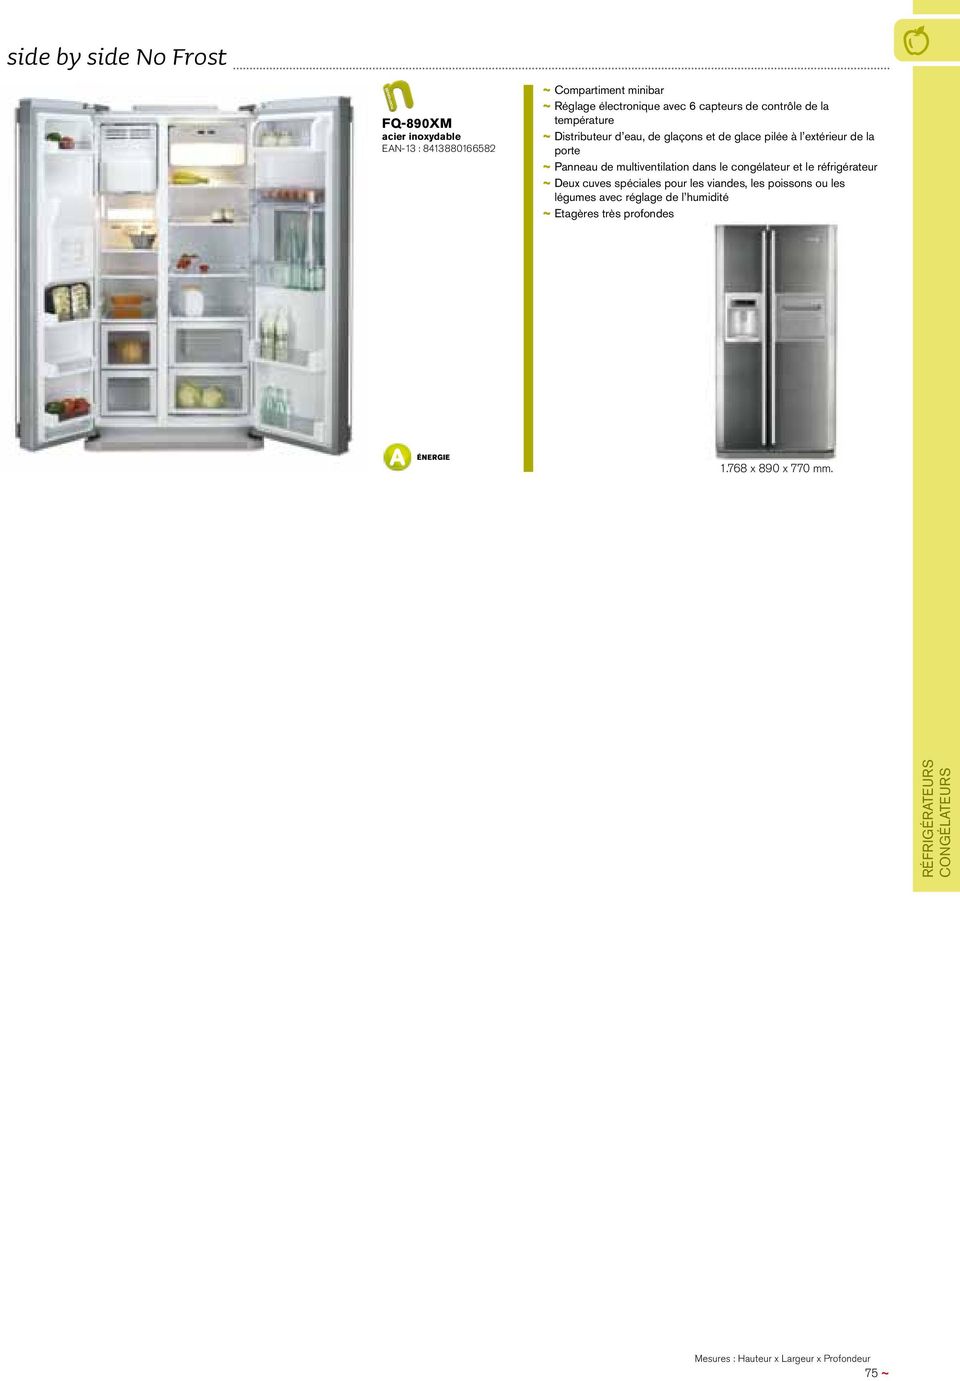 Panneau de multiventilation dans le congélateur et le réfrigérateur ~ ~ Deux cuves spéciales pour les viandes, les poissons ou